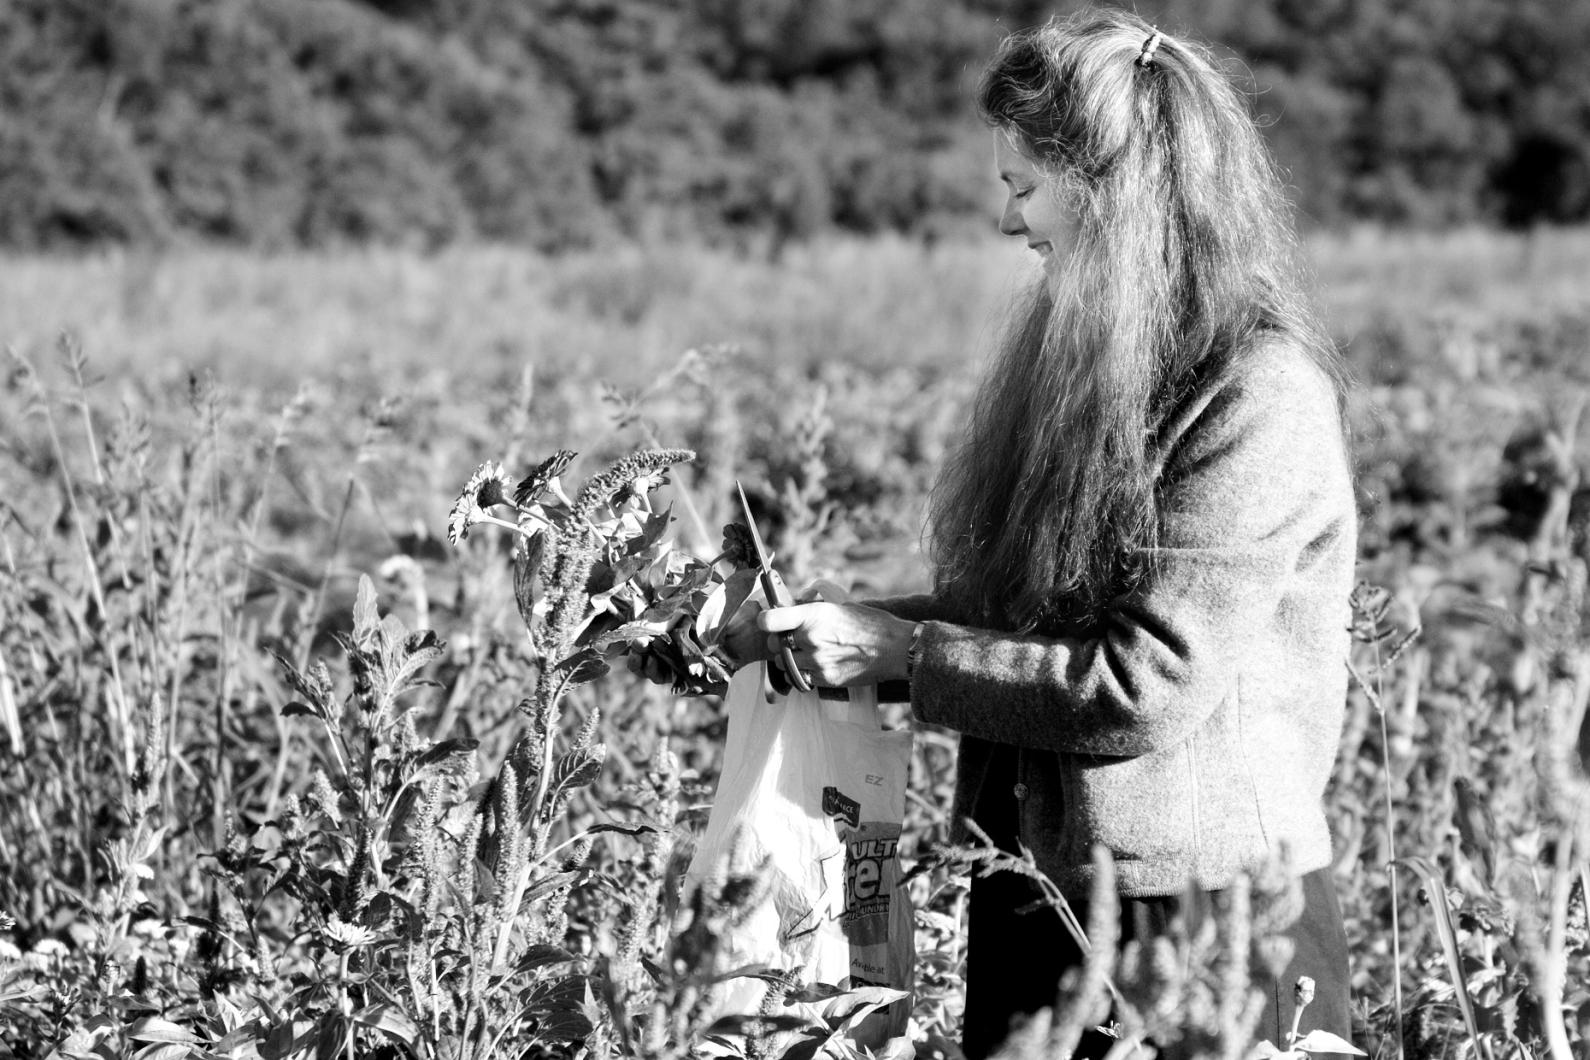 Betsy Smith cuts flowers at Thimble Farm